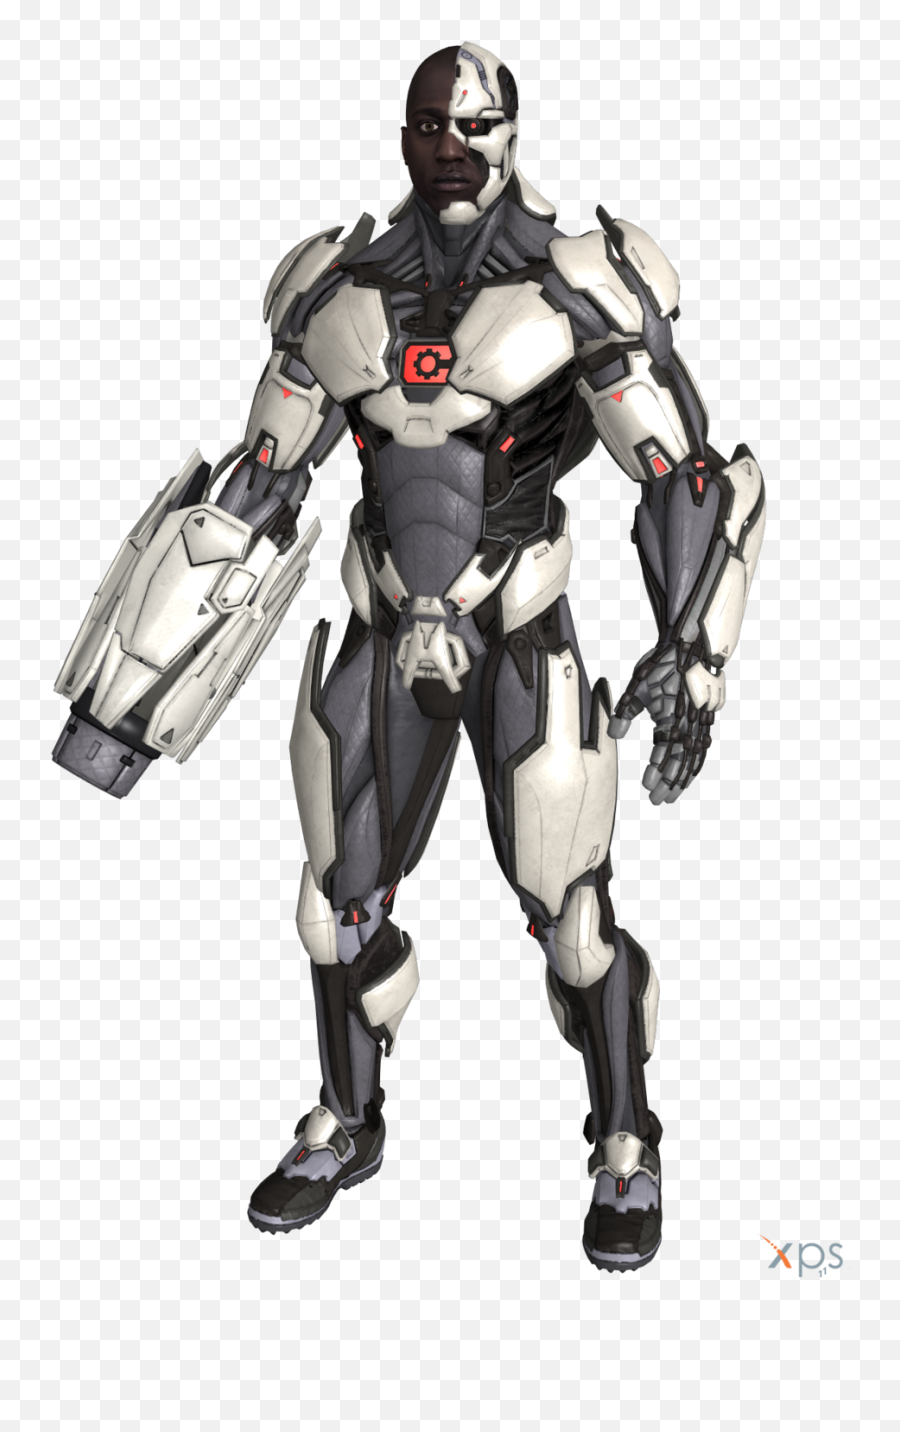 Cyborg Png - Injustice 2 Cyborg Cannon Emoji,Cyborg Png